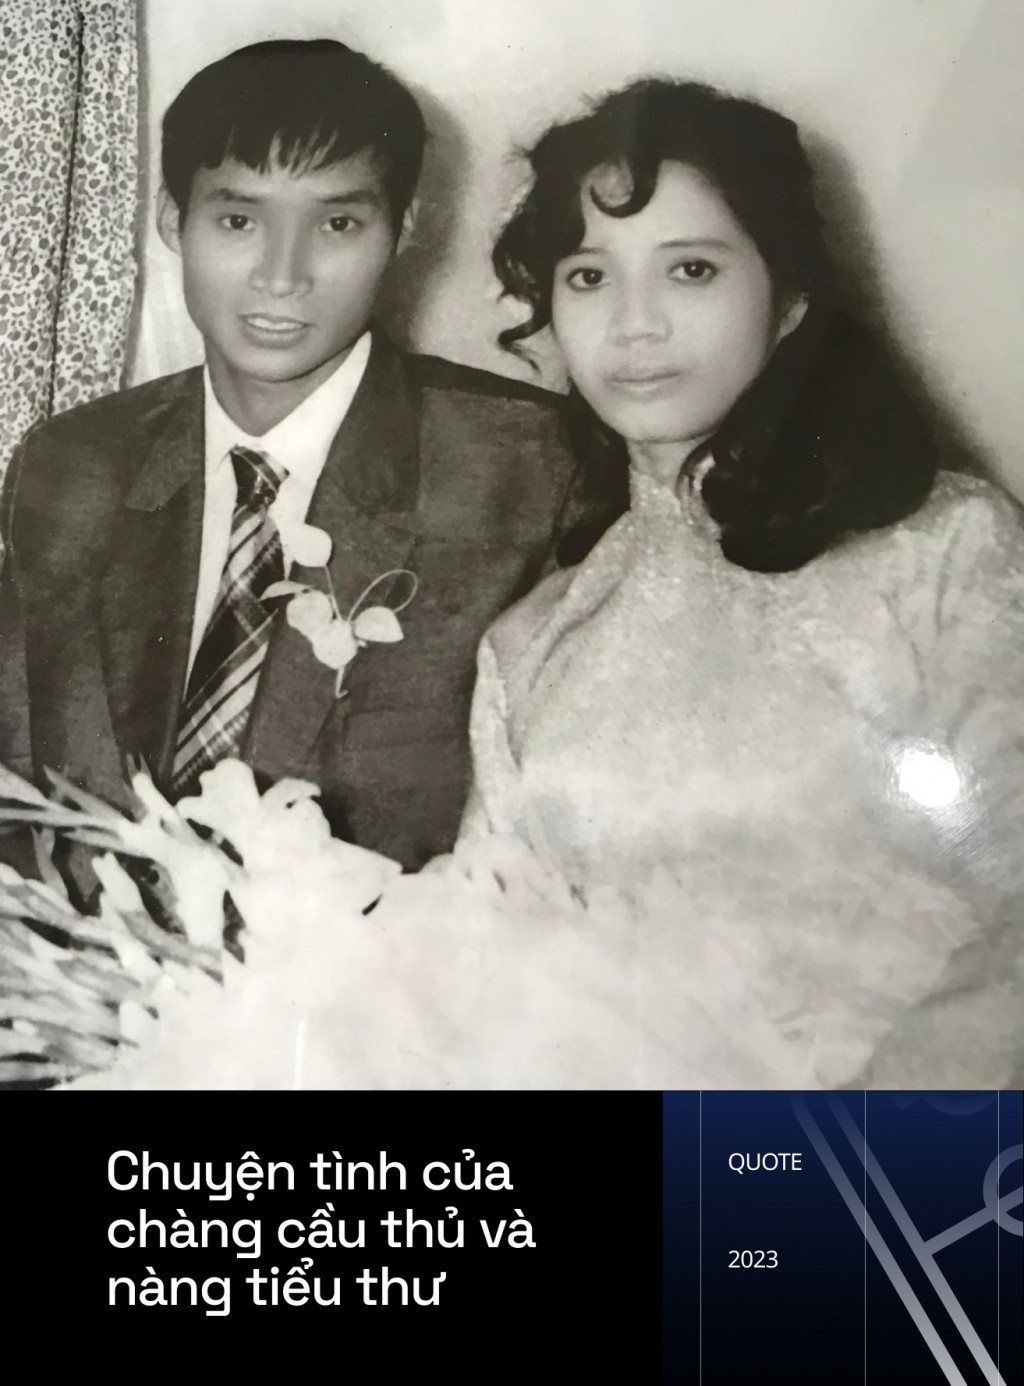 Chuyện tình của HLV Mai Đức Chung và vợ tiểu thư Hà thành, một lòng ủng hộ ước mơ World Cup của chồng - Ảnh 1.